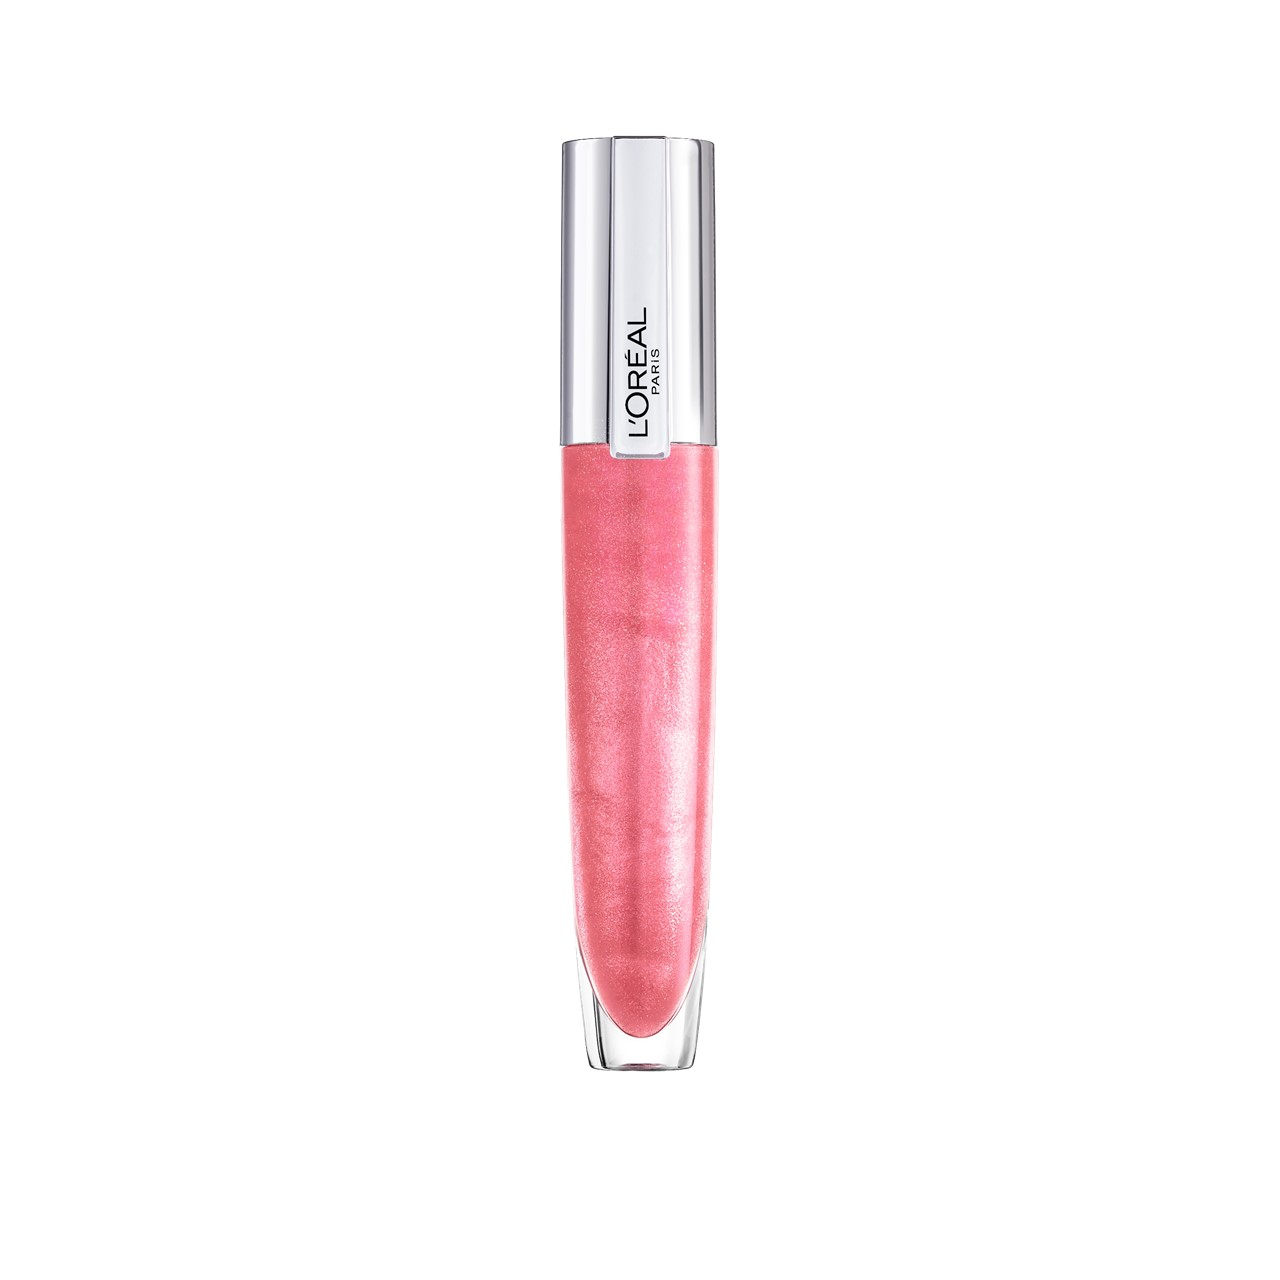 L'Oréal Paris Rouge Signature Plumping Lip Gloss 406 Amplify 7ml (0.24fl oz)